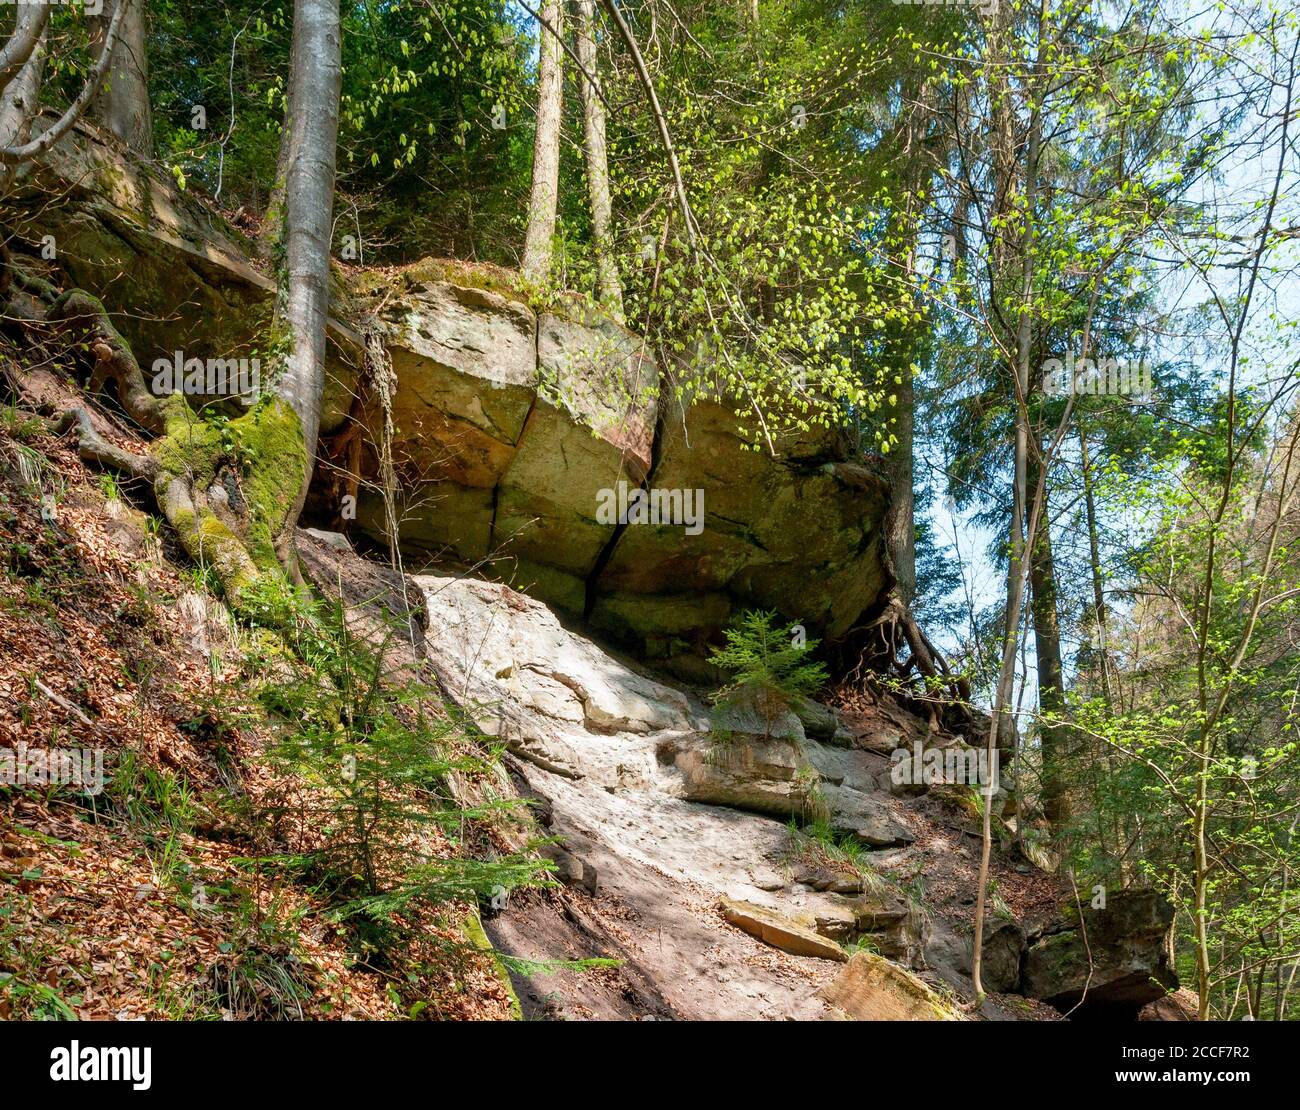 Germania, Baden-Württemberg, Murrhardt, roccia sovrasta alla cascata superiore nella gola di Hörschbach nel Parco Naturale della Foresta Svevo-Franconia. Foto Stock